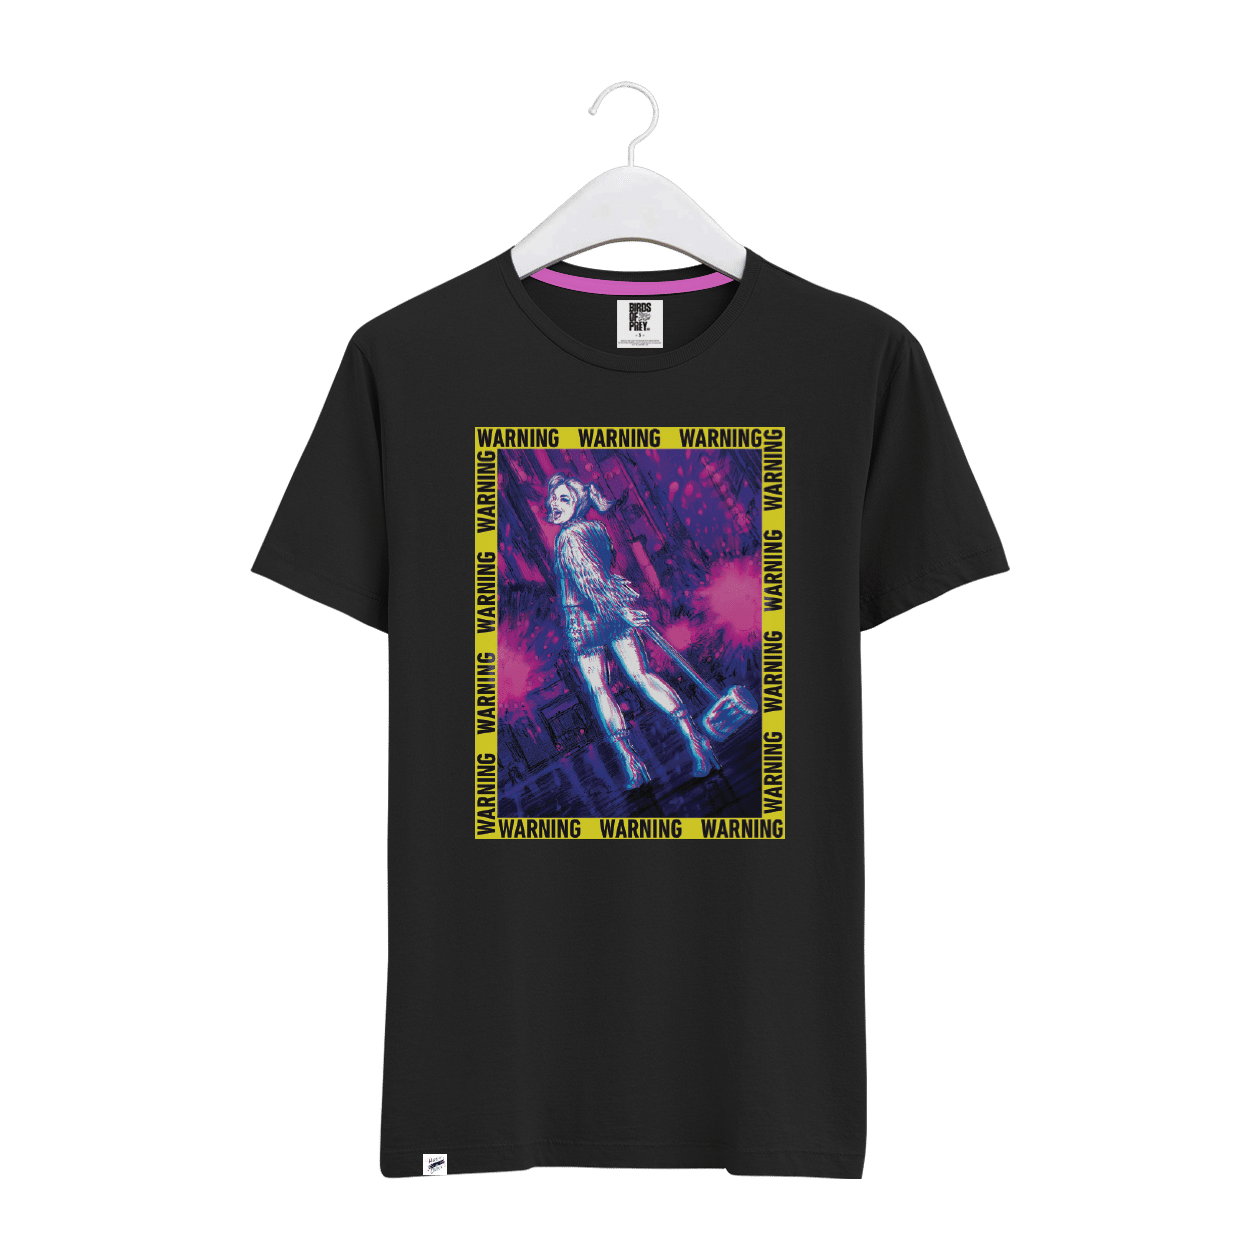 Harley Quinn Unisex Graphic T-Shirt (Oversized) I COMMON SENSE